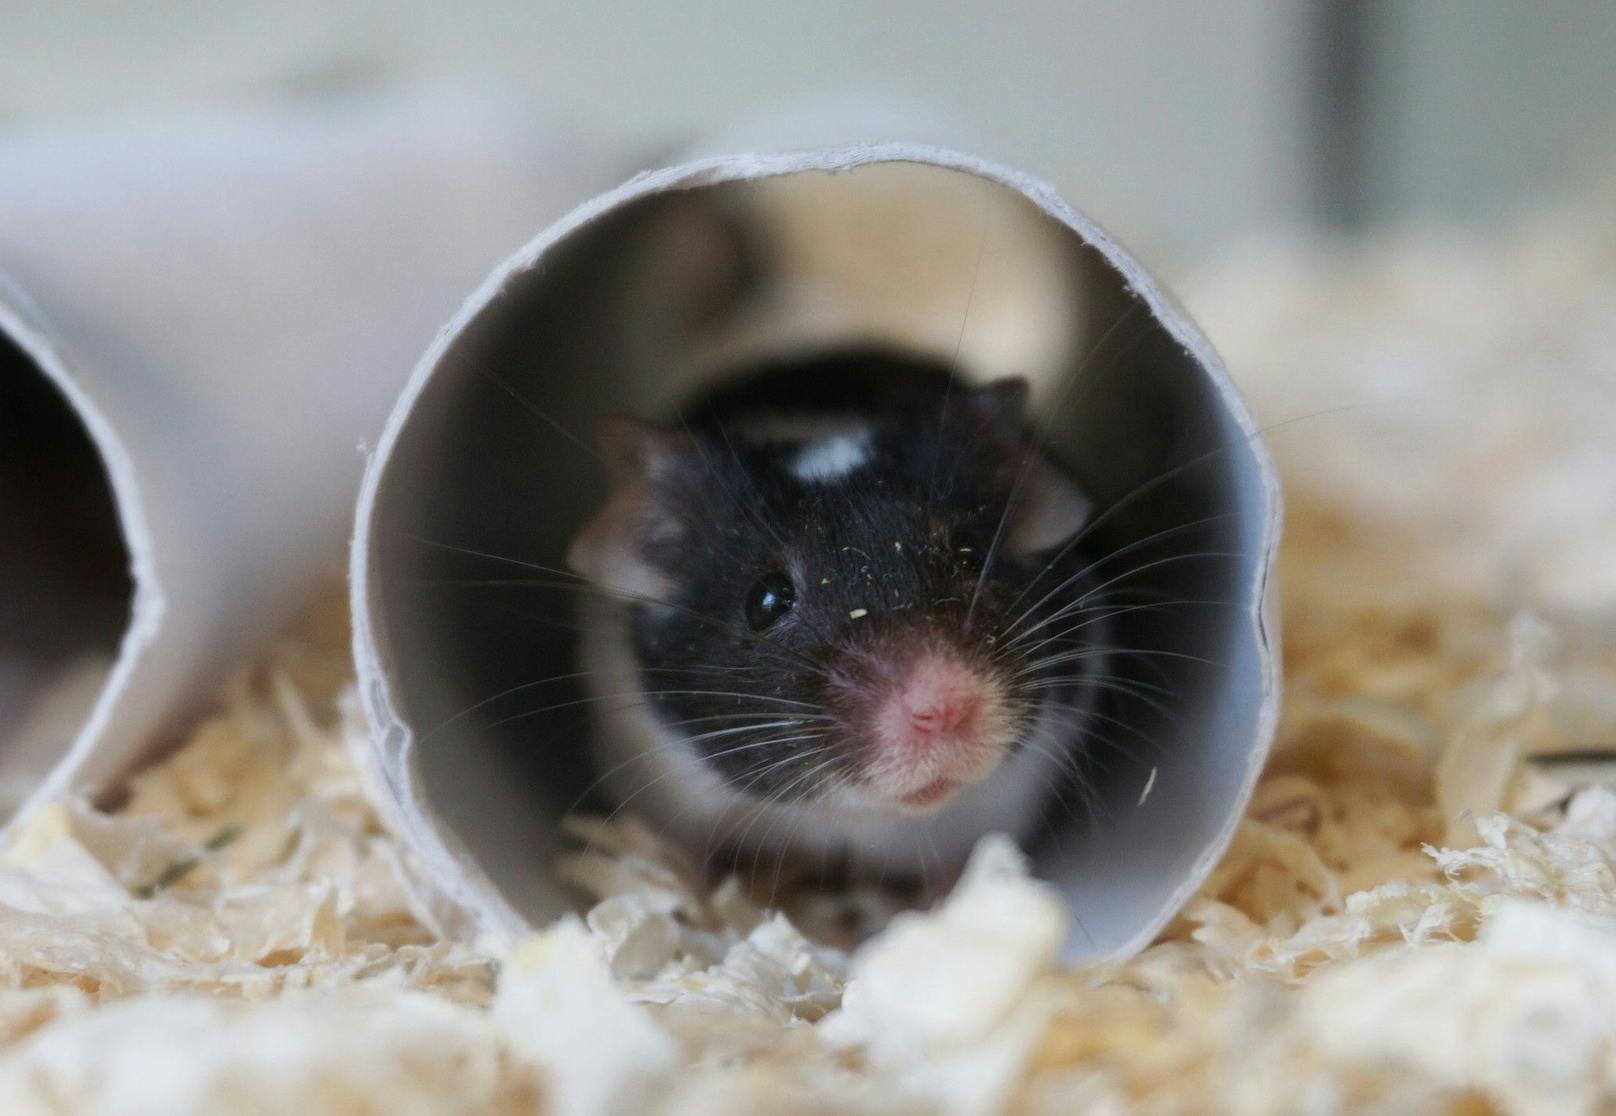 <strong>JUSTIN, BAKTUS &amp; CO.: </strong>Mäuse sind pfiffige, intelligente Tiere. Sie sind dämmerungs- und nachtaktiv und äußerst sozial. Deshalb müssen sie mindestens zu zweit gehalten werden und bereiten ihrem Halter viel Freude!&nbsp;